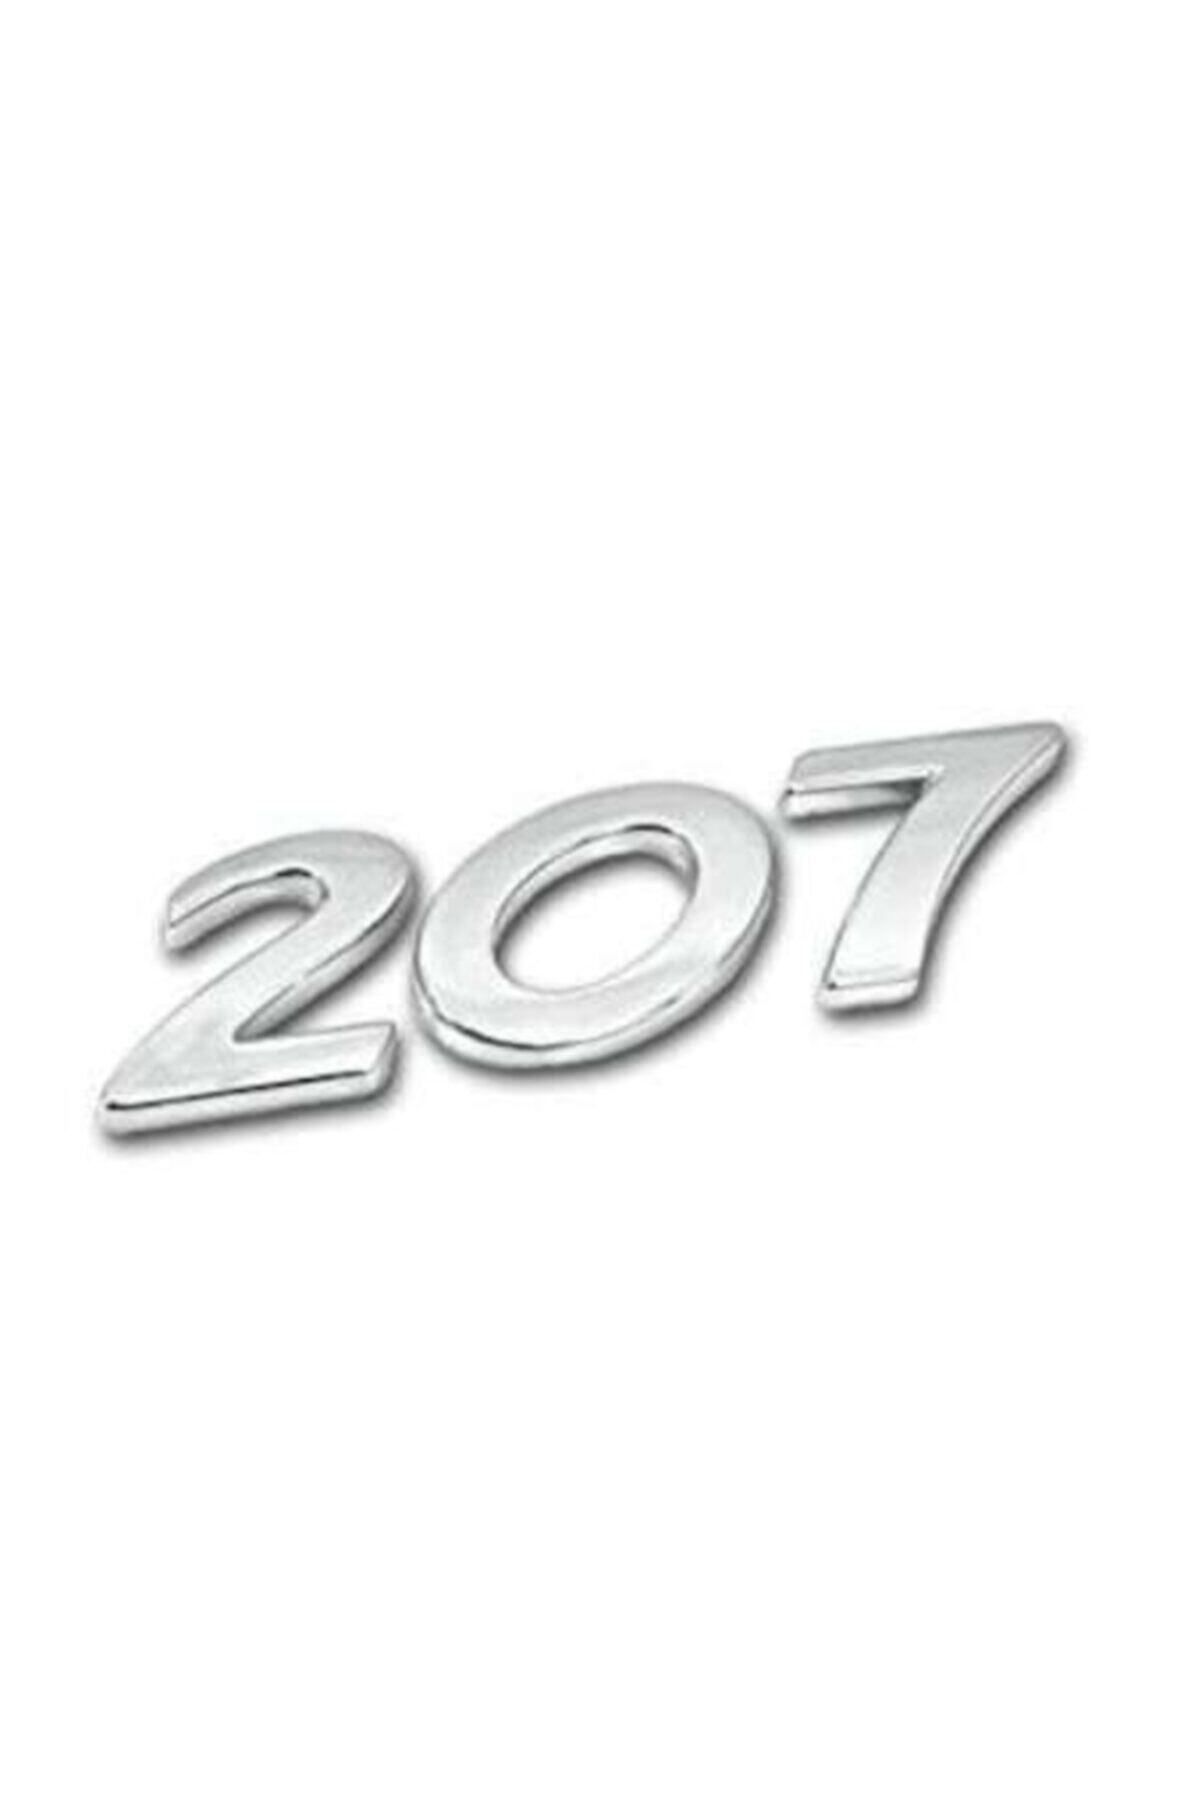 EDEXPORT Peugeot 207 - Bagaj Kaputu Üzeri 207 Yazısı Ve Aslan Arması